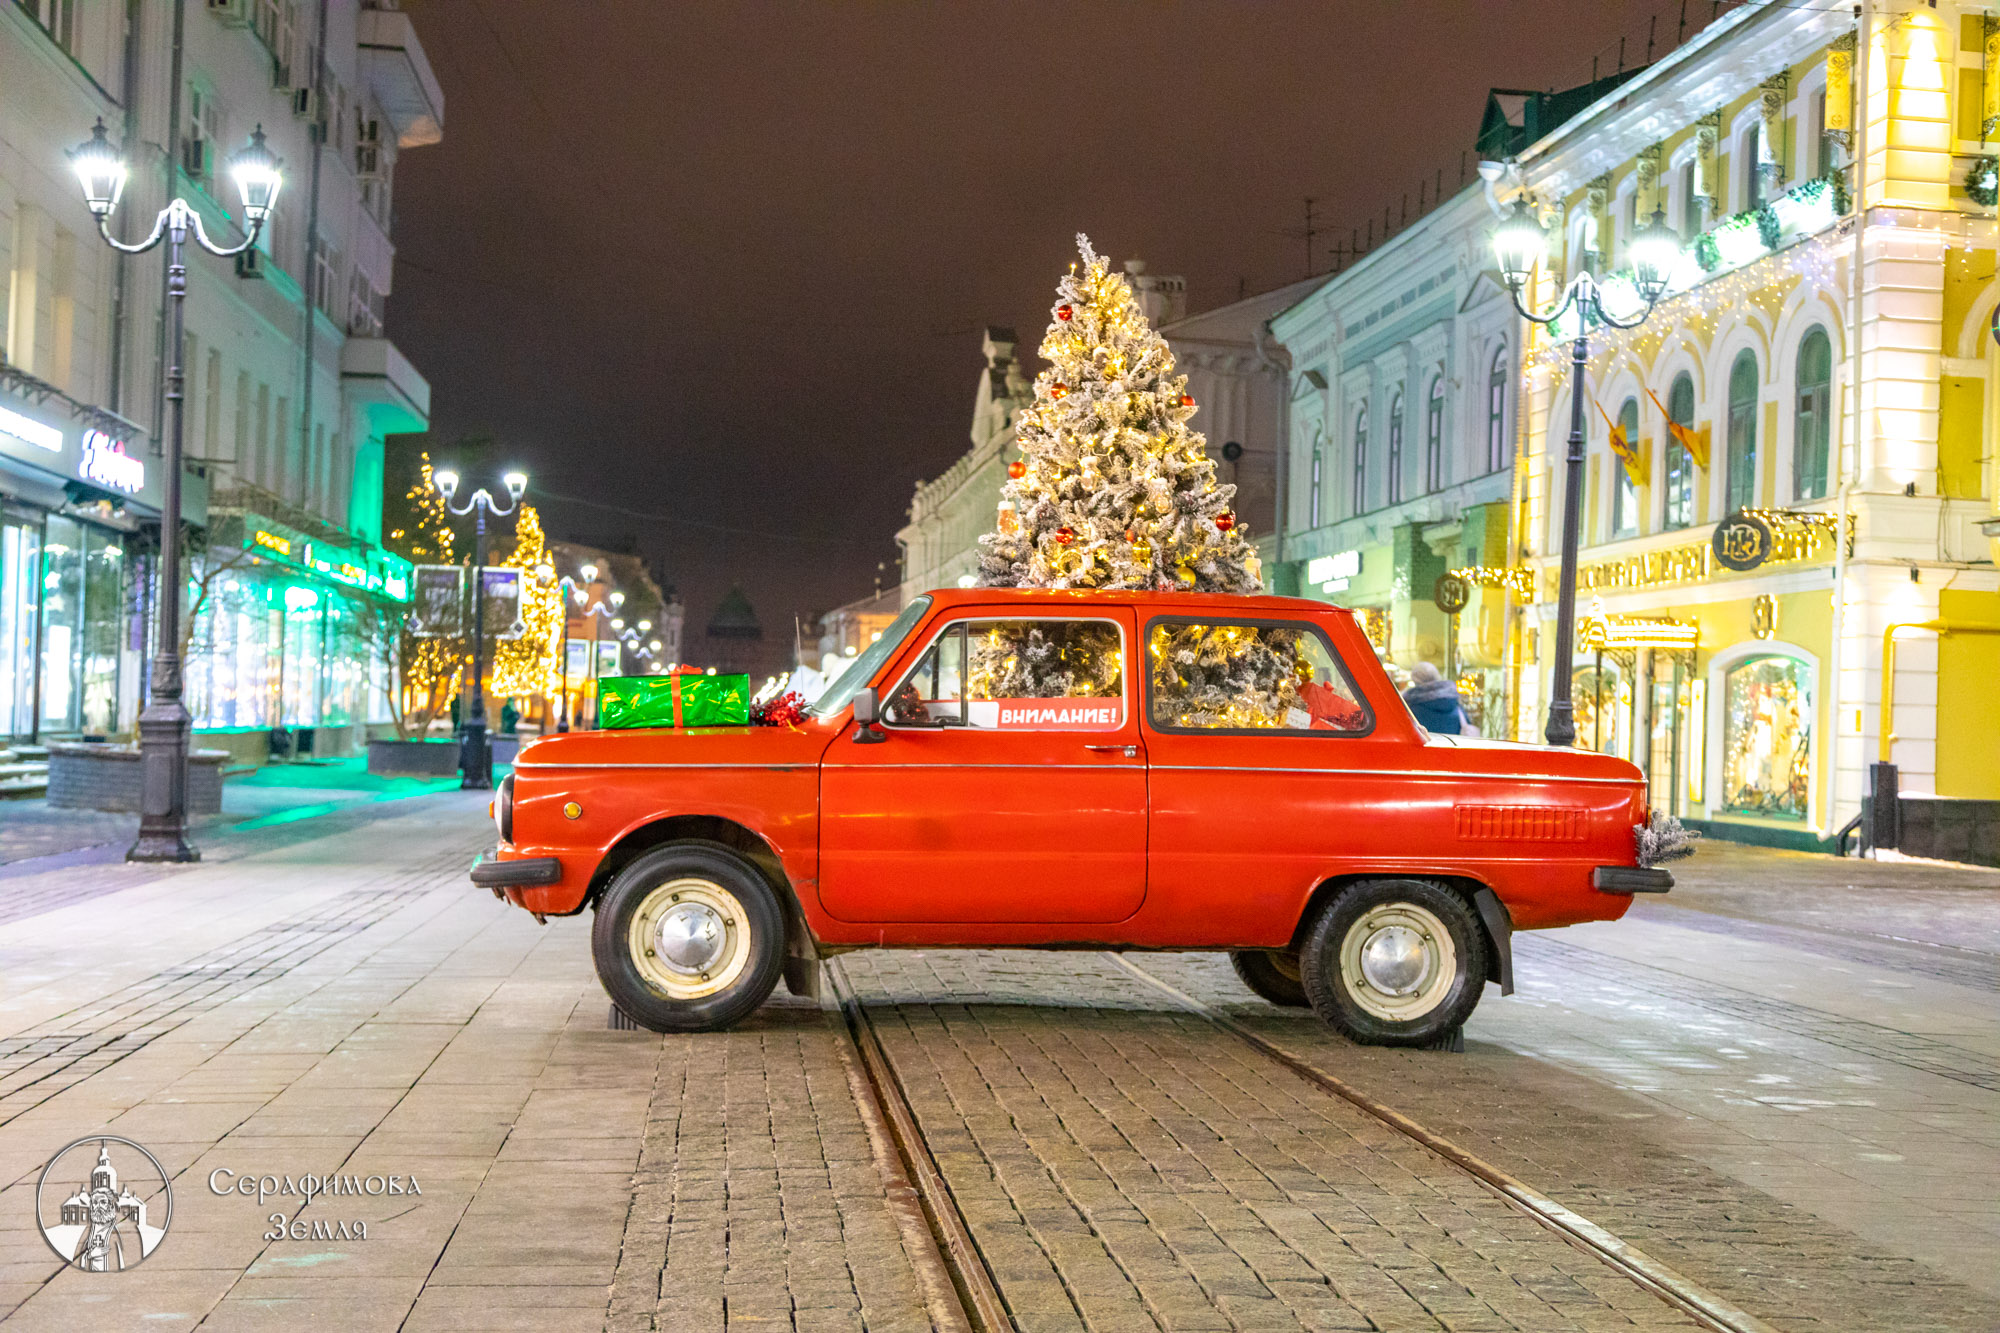 Нижний Новгород в преддверии Нового года: фотопрогулка по праздничному городу